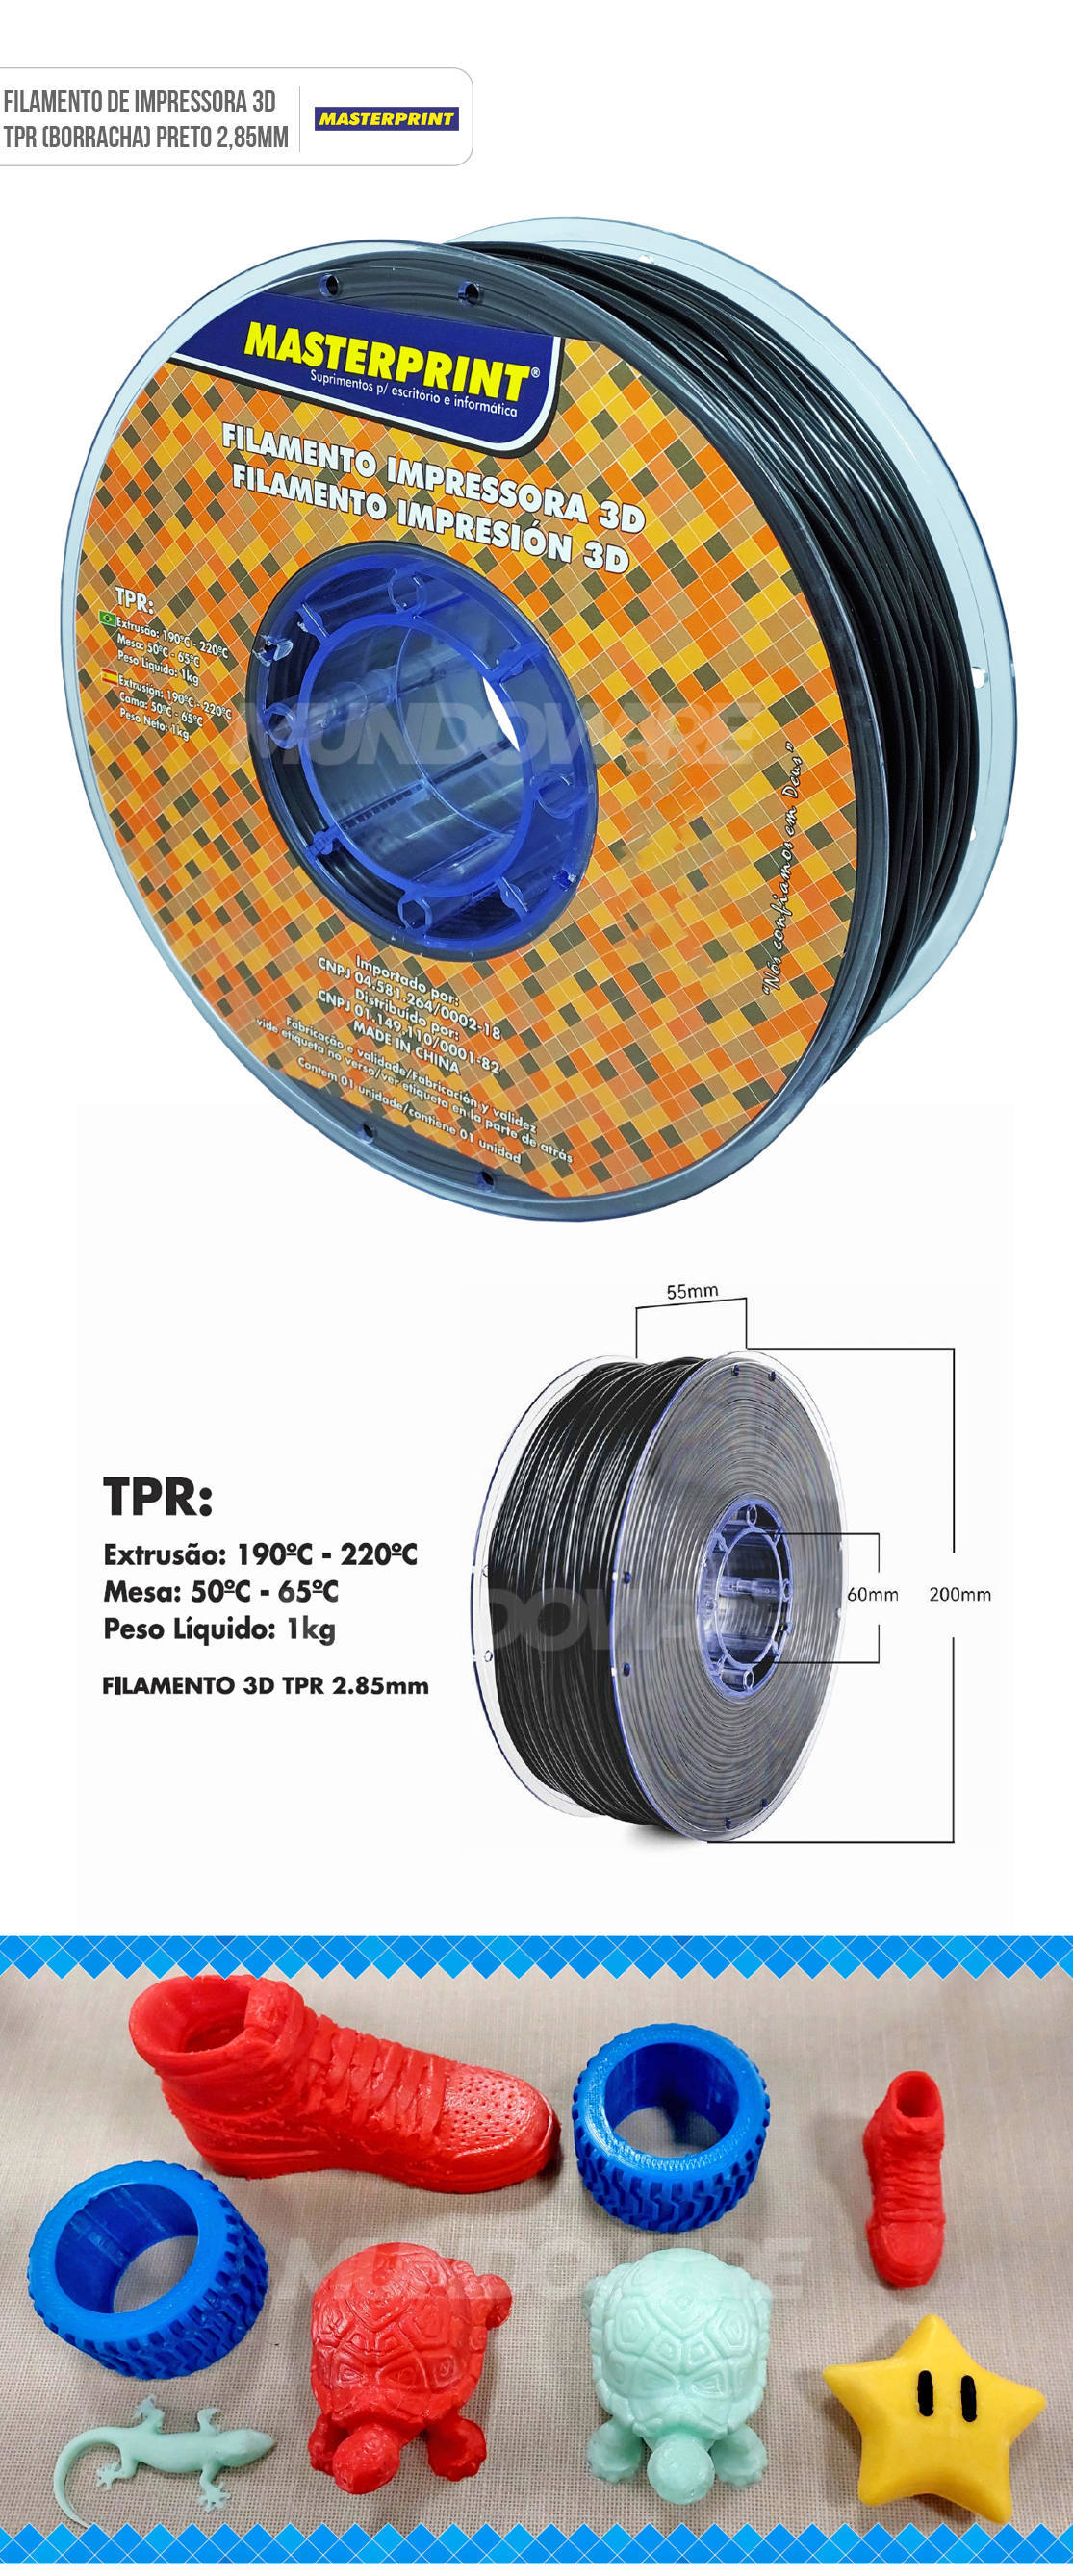 Filamento 3D TPR (Borracha) Preto para Impressora 3D com Extrusora de 2.85mm Rolo de 1Kg Masterprint